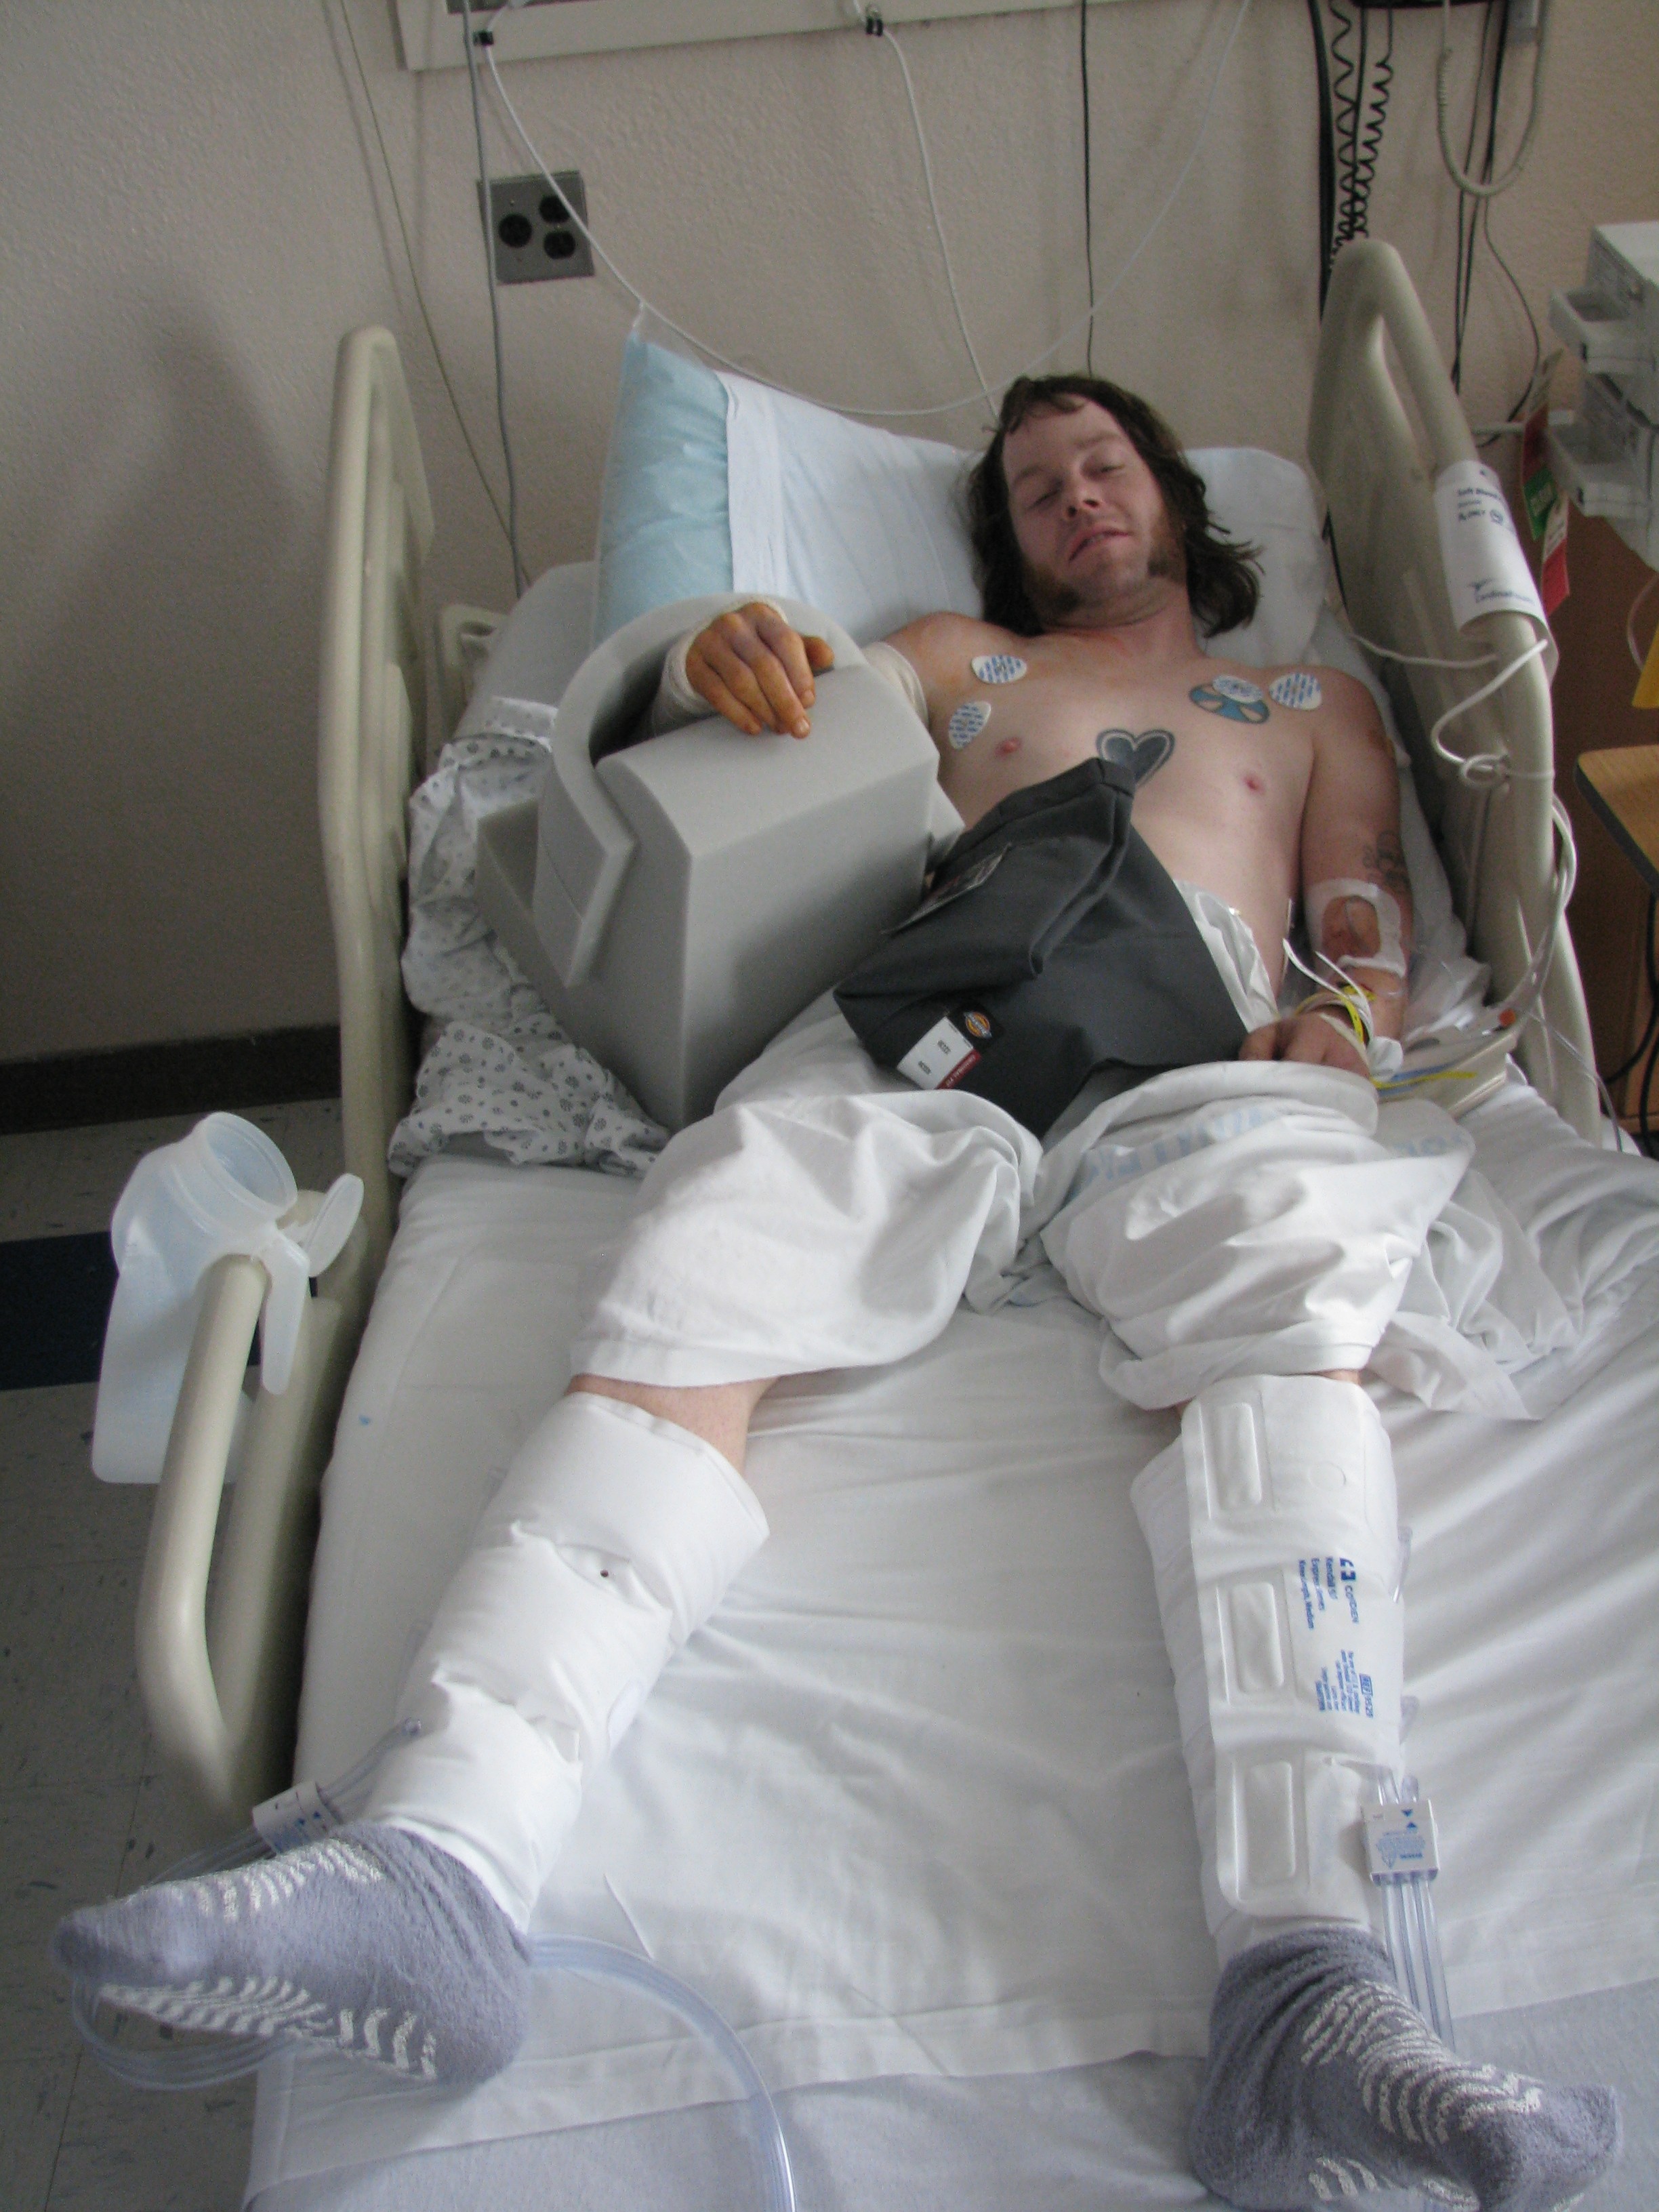 Skater bandaged up in hospital bed